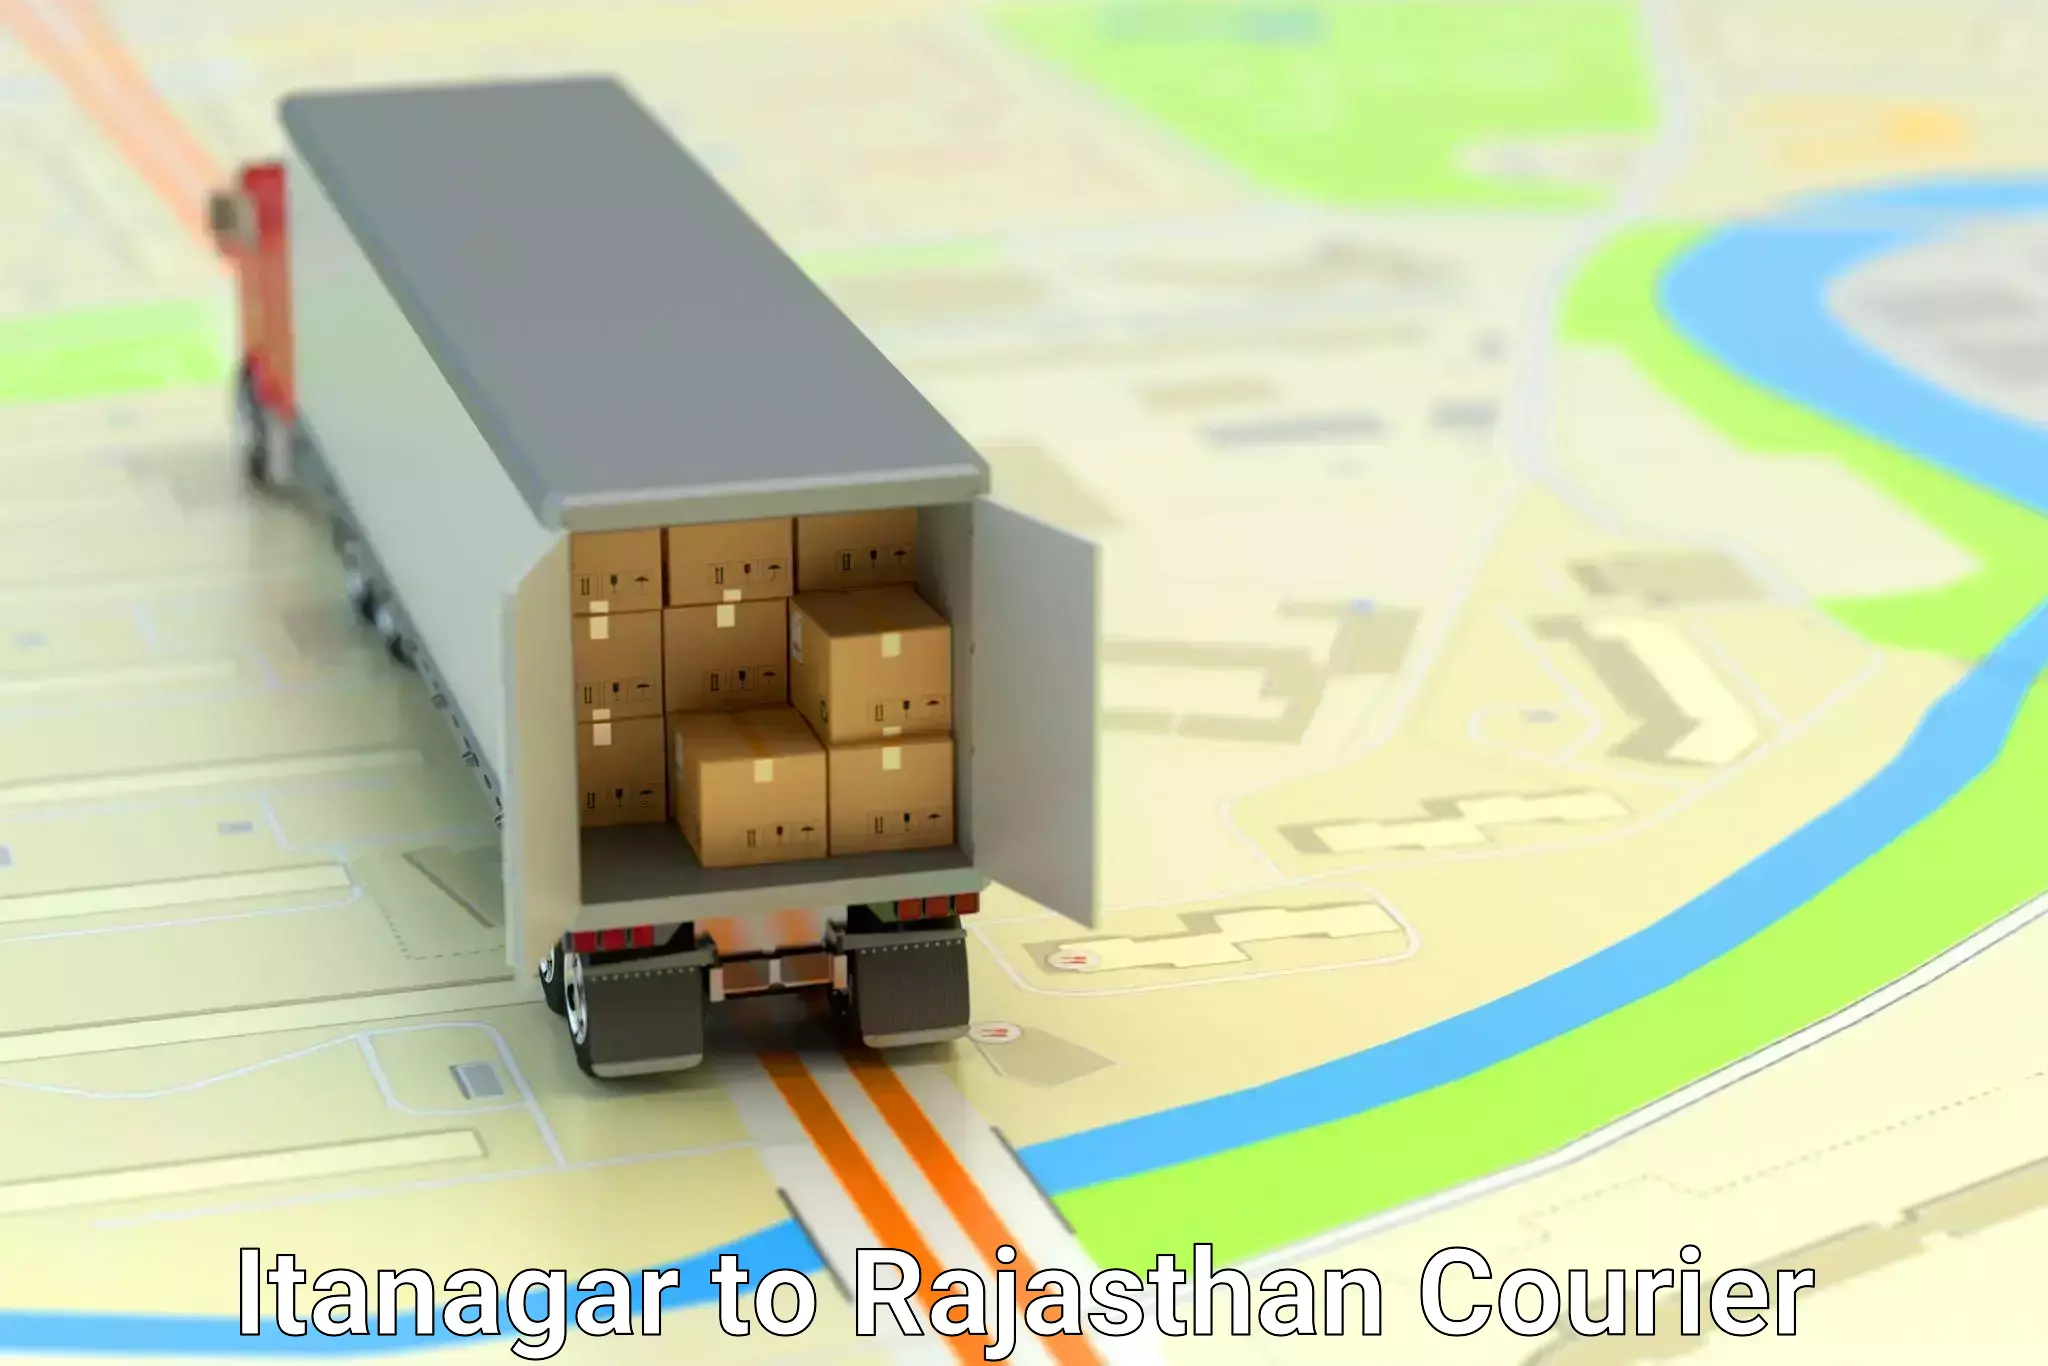 High-speed parcel service Itanagar to Sri Vijaynagar